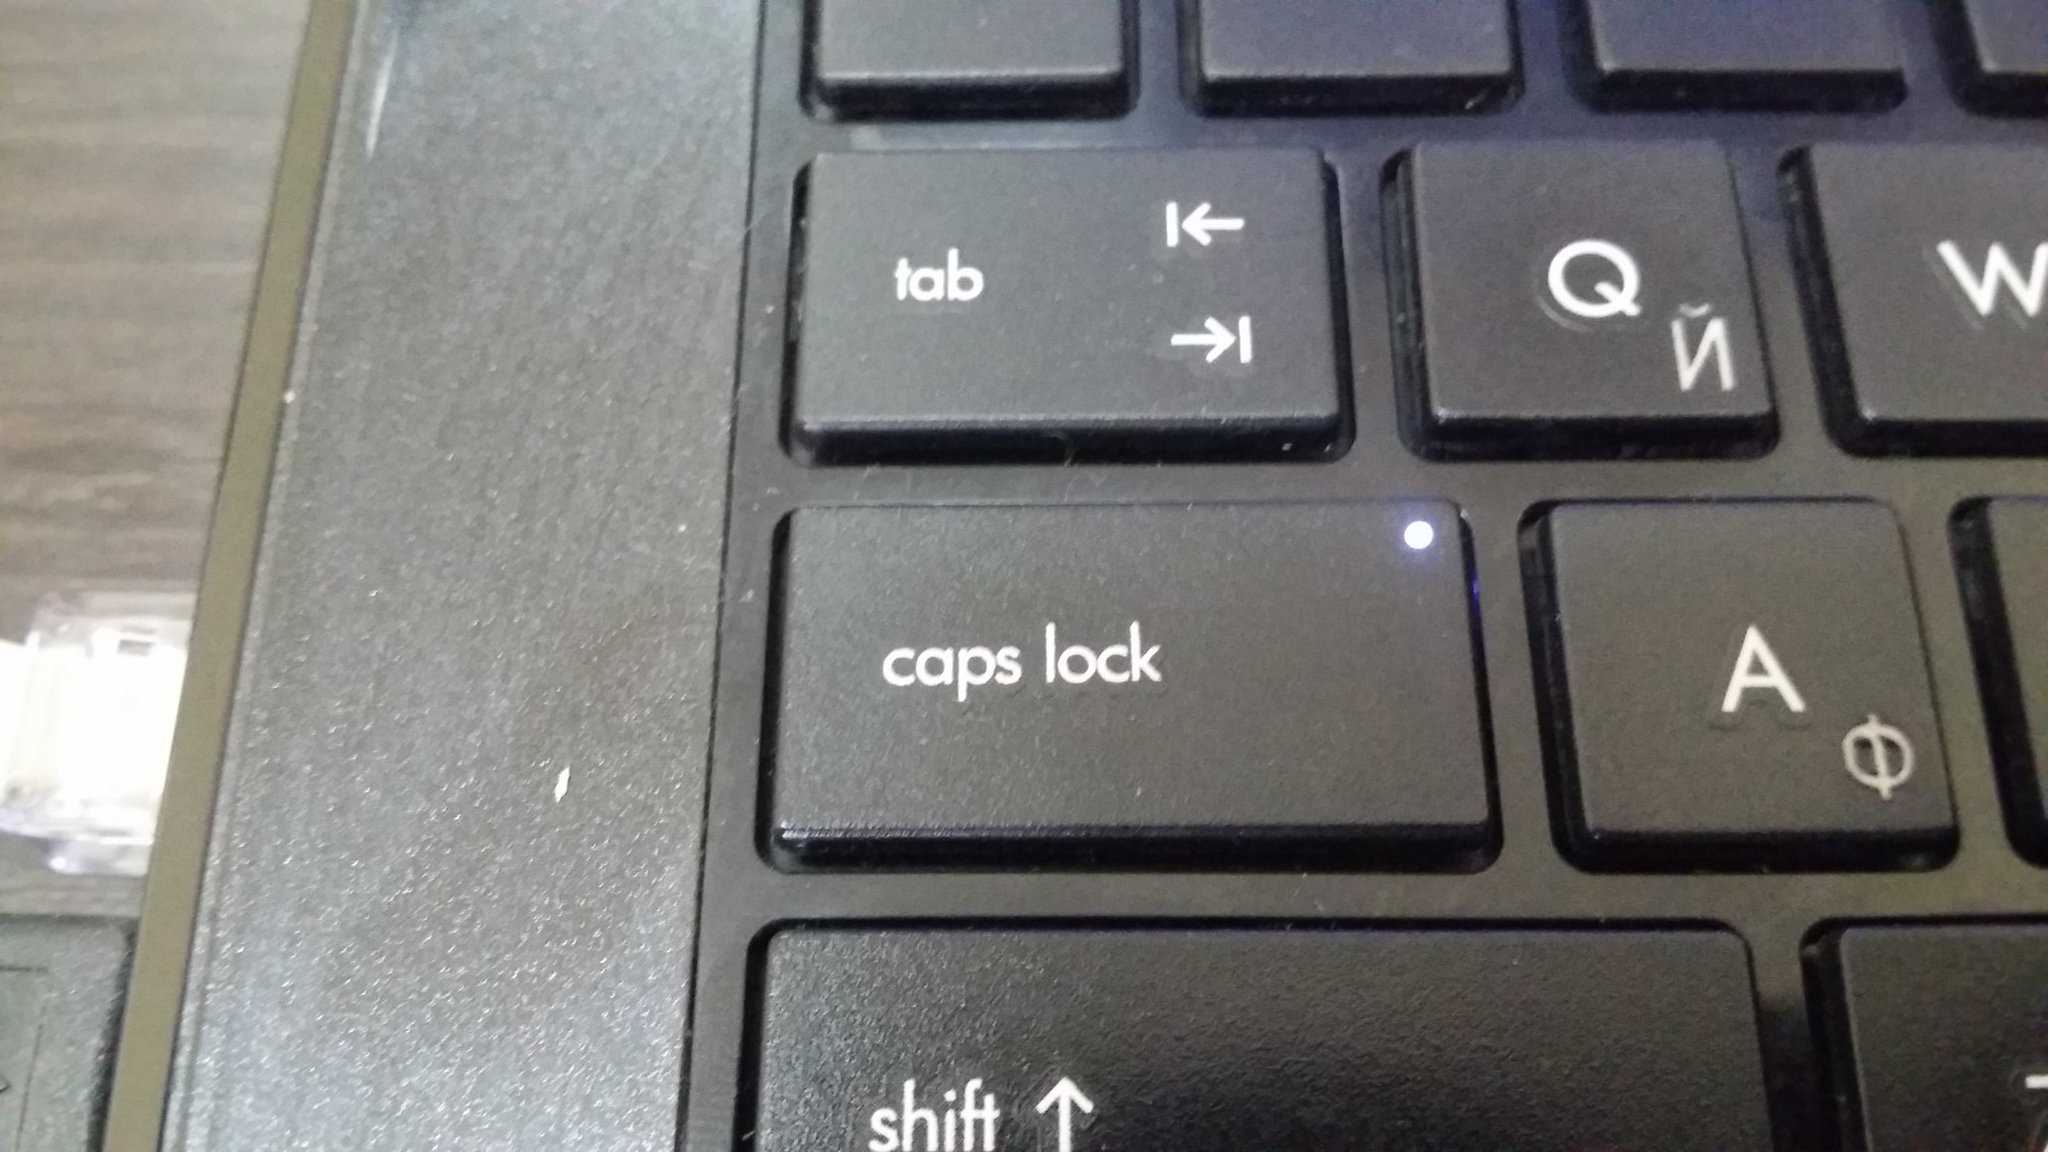 Kак отключить caps lock через редактор реестра windows